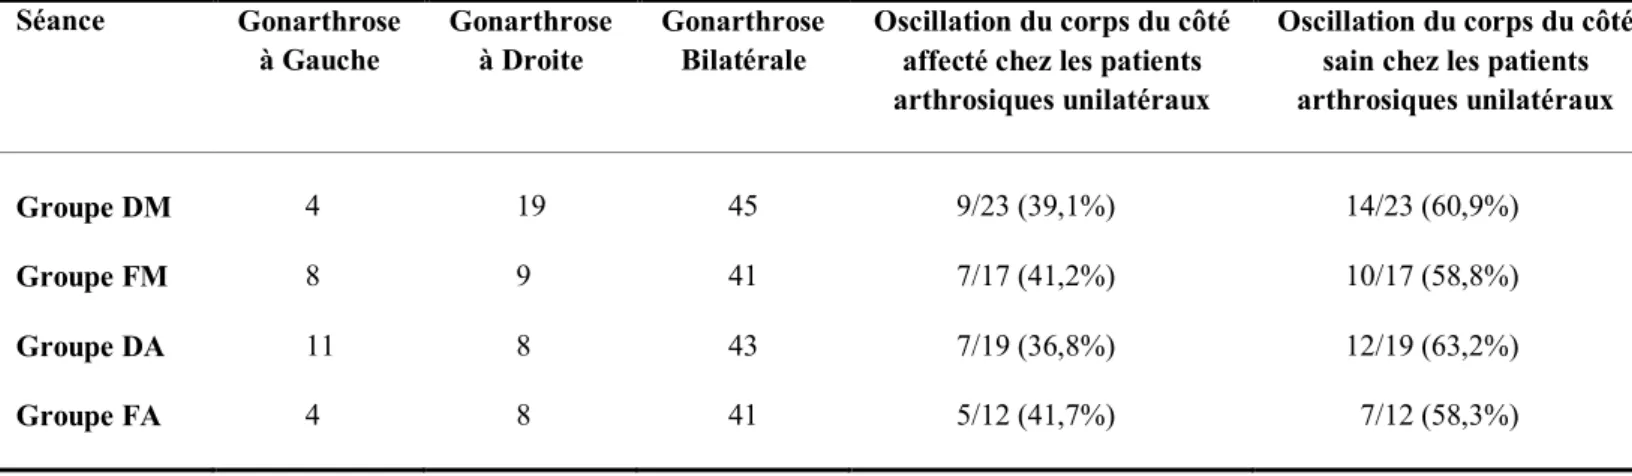 Tableau  8. Répartition de la gonarthrose selon le membre inférieur atteint et oscillations  posturales  selon  l’axe  médio-latéral  exprimé  par  le  score  moyen  d’équilibre  en  fonction  de la plage horaire observée (en nombre de patients et en pourc